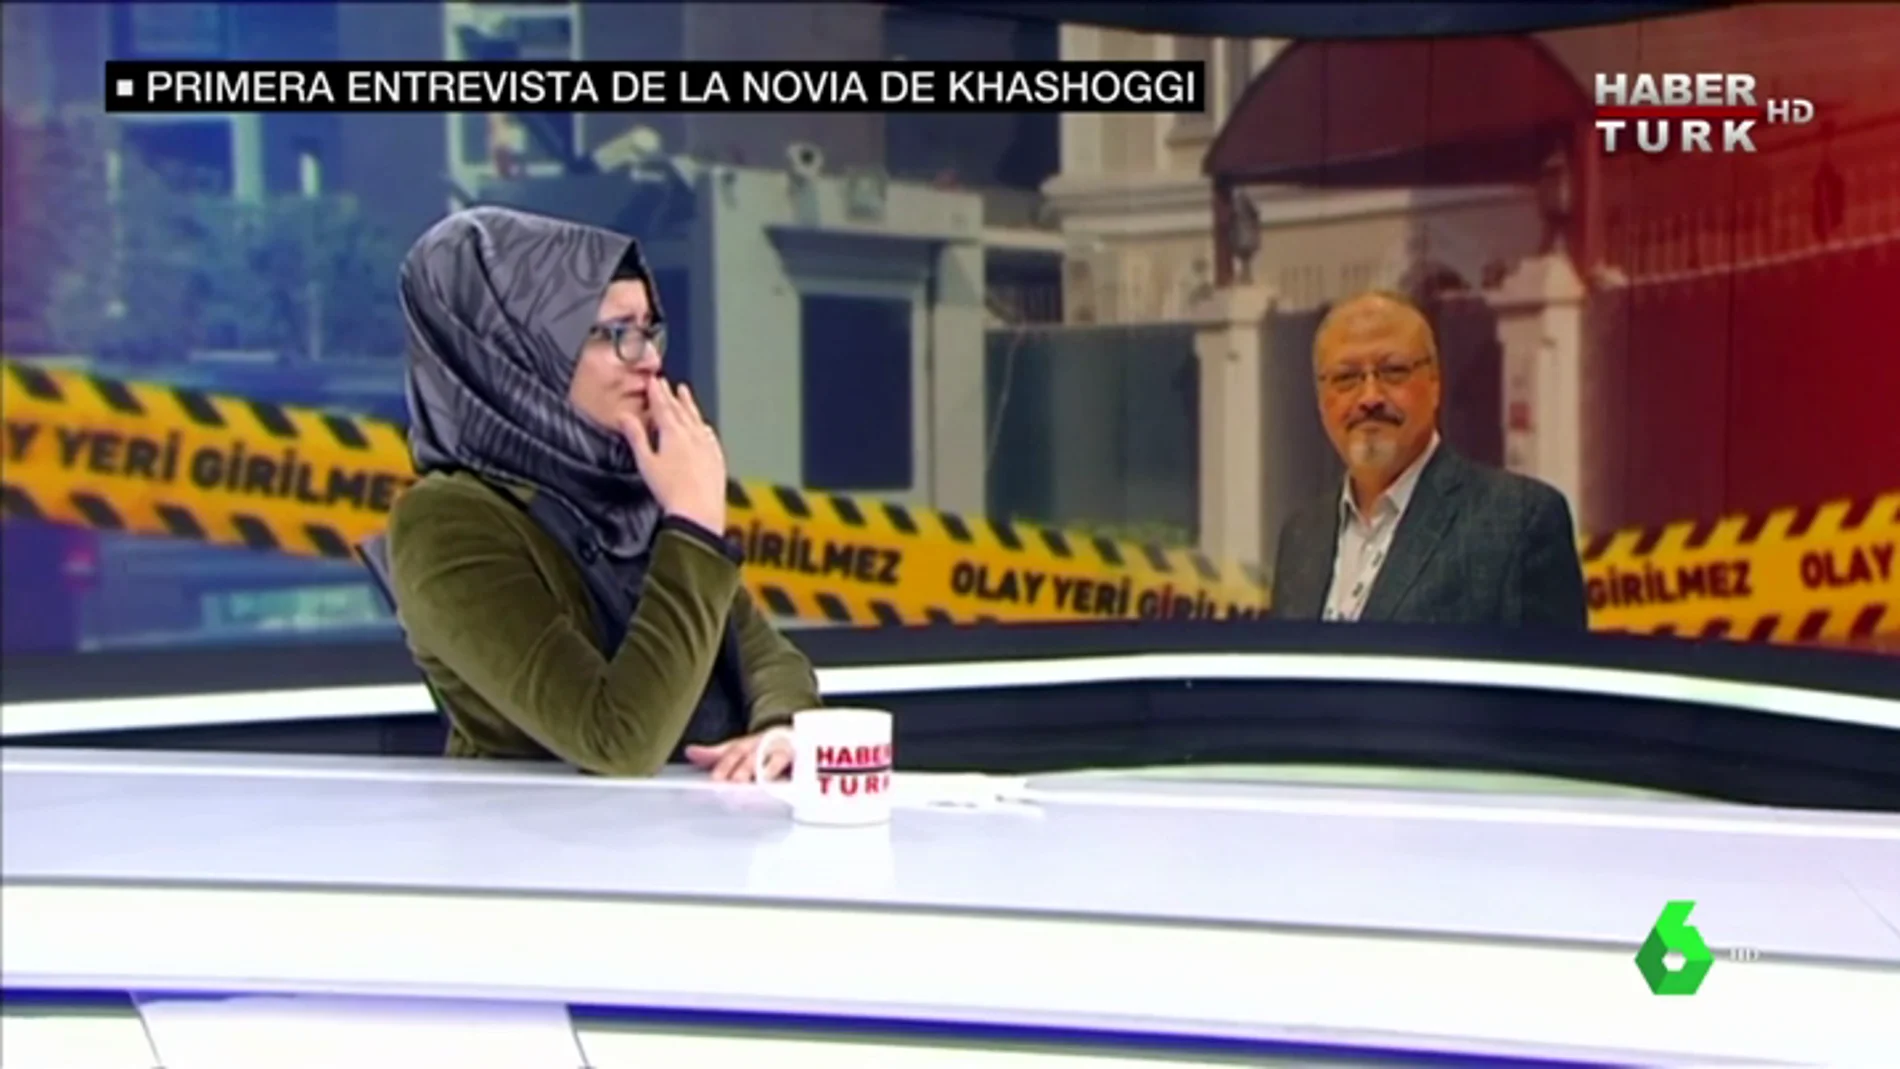 La novia de Khashoggi revive los últimos días del periodista: "Estaba preocupado por si le interrogaban"